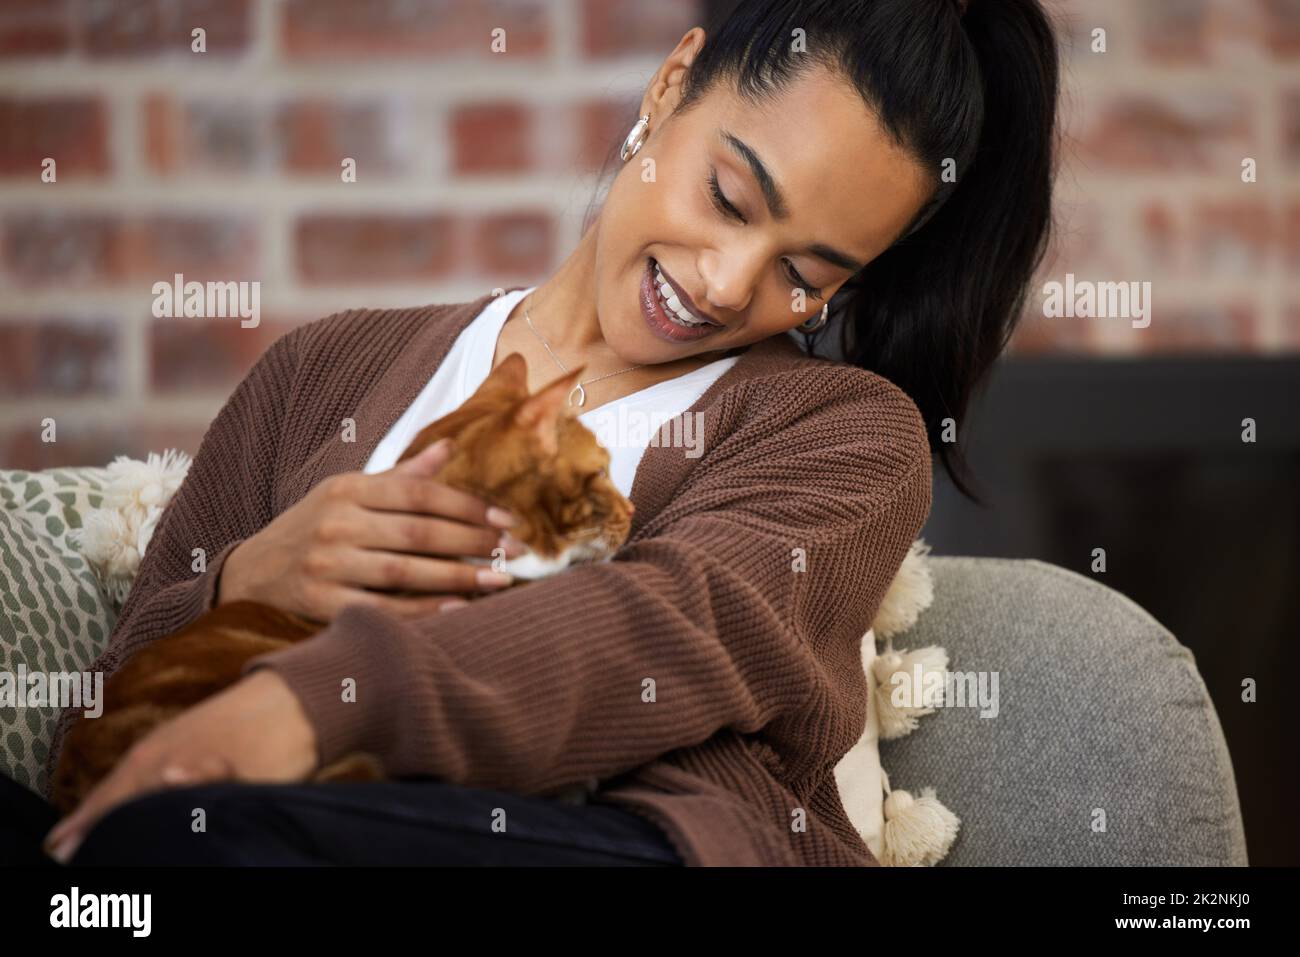 Glück bedeutet, eine Katze als Freund zu haben. Aufnahme einer jungen Frau, die sich zu Hause mit ihrer Katze anklebte. Stockfoto